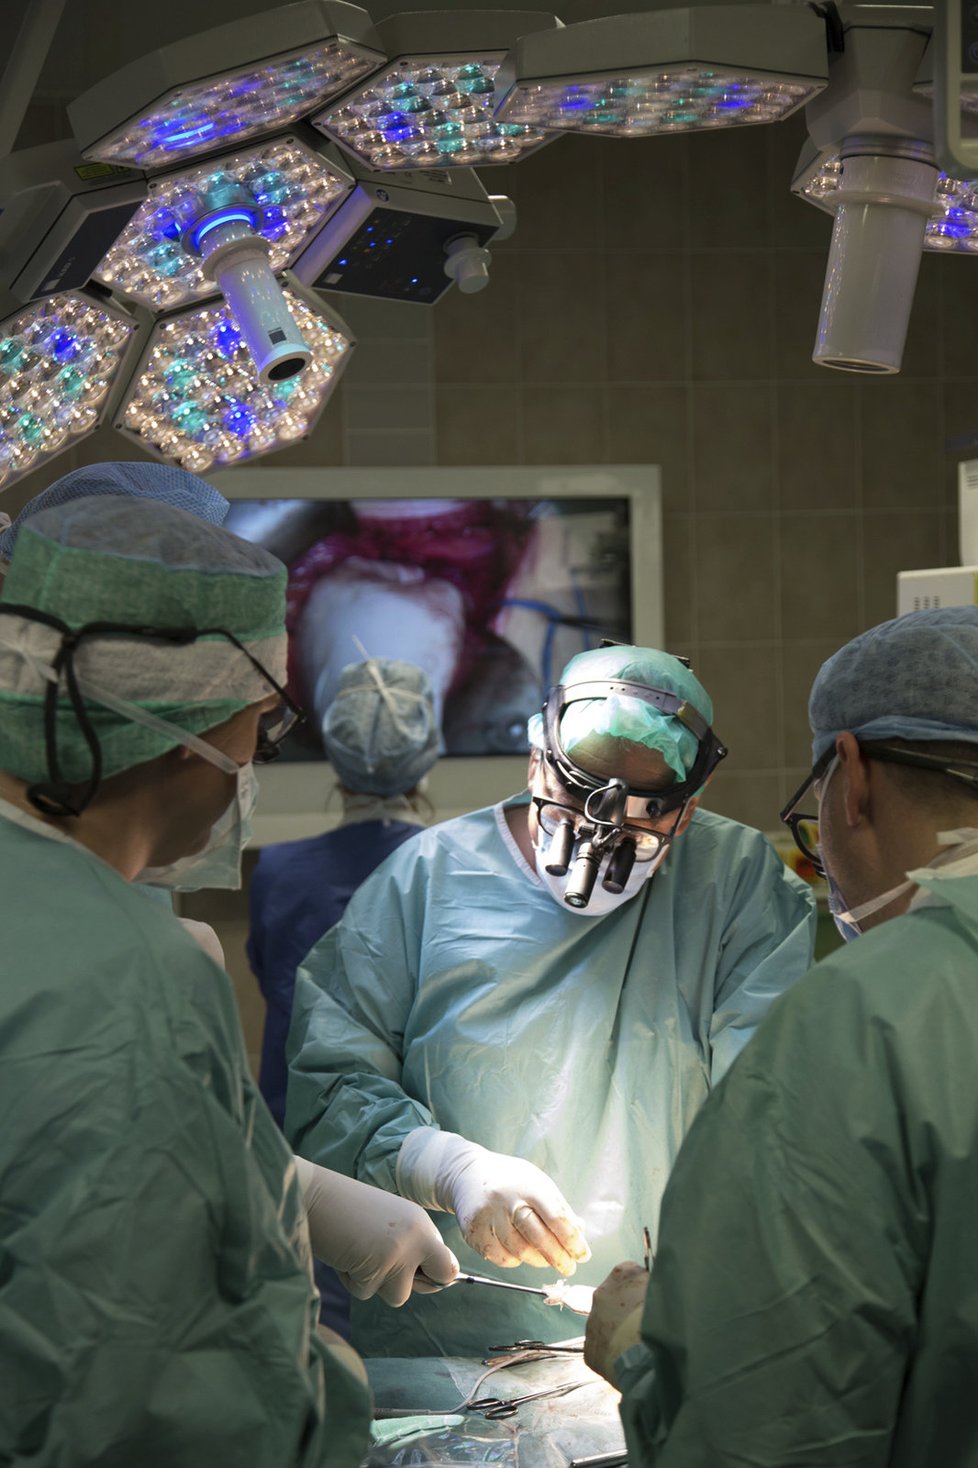 Unikátní operace provádí lékaři pražského IKEMU. V tomto případě pracují na transplantaci dělohy, která se v Čechách uskutečnila poprvé v roce 2016.